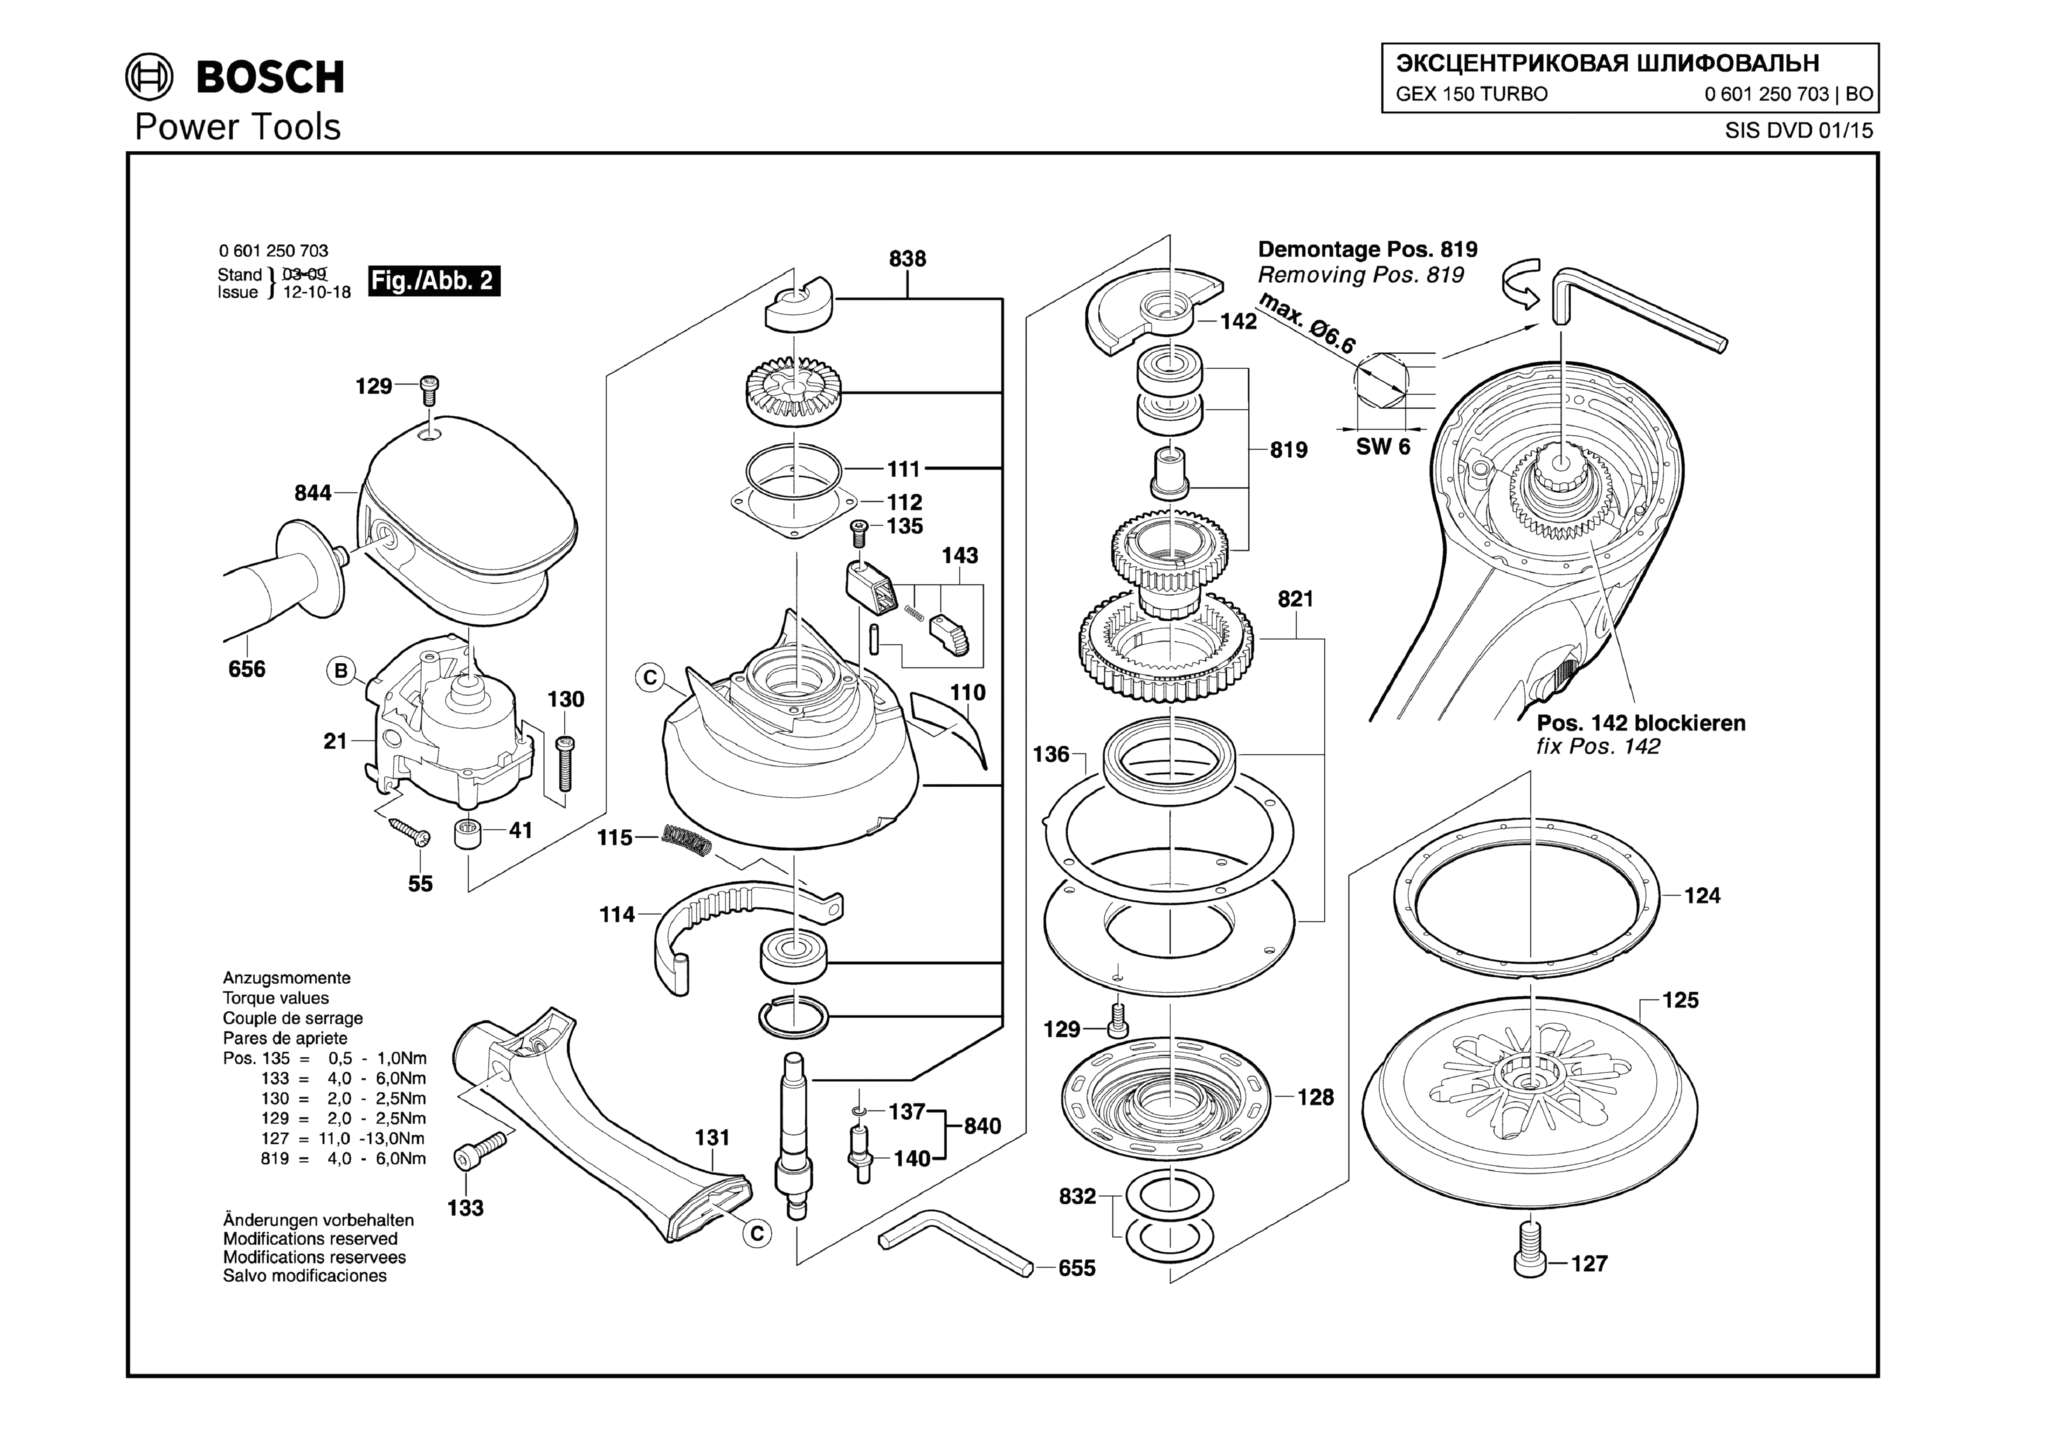 Запчасти, схема и деталировка Bosch GEX 150 TURBO (ТИП 0601250791) (ЧАСТЬ 2)